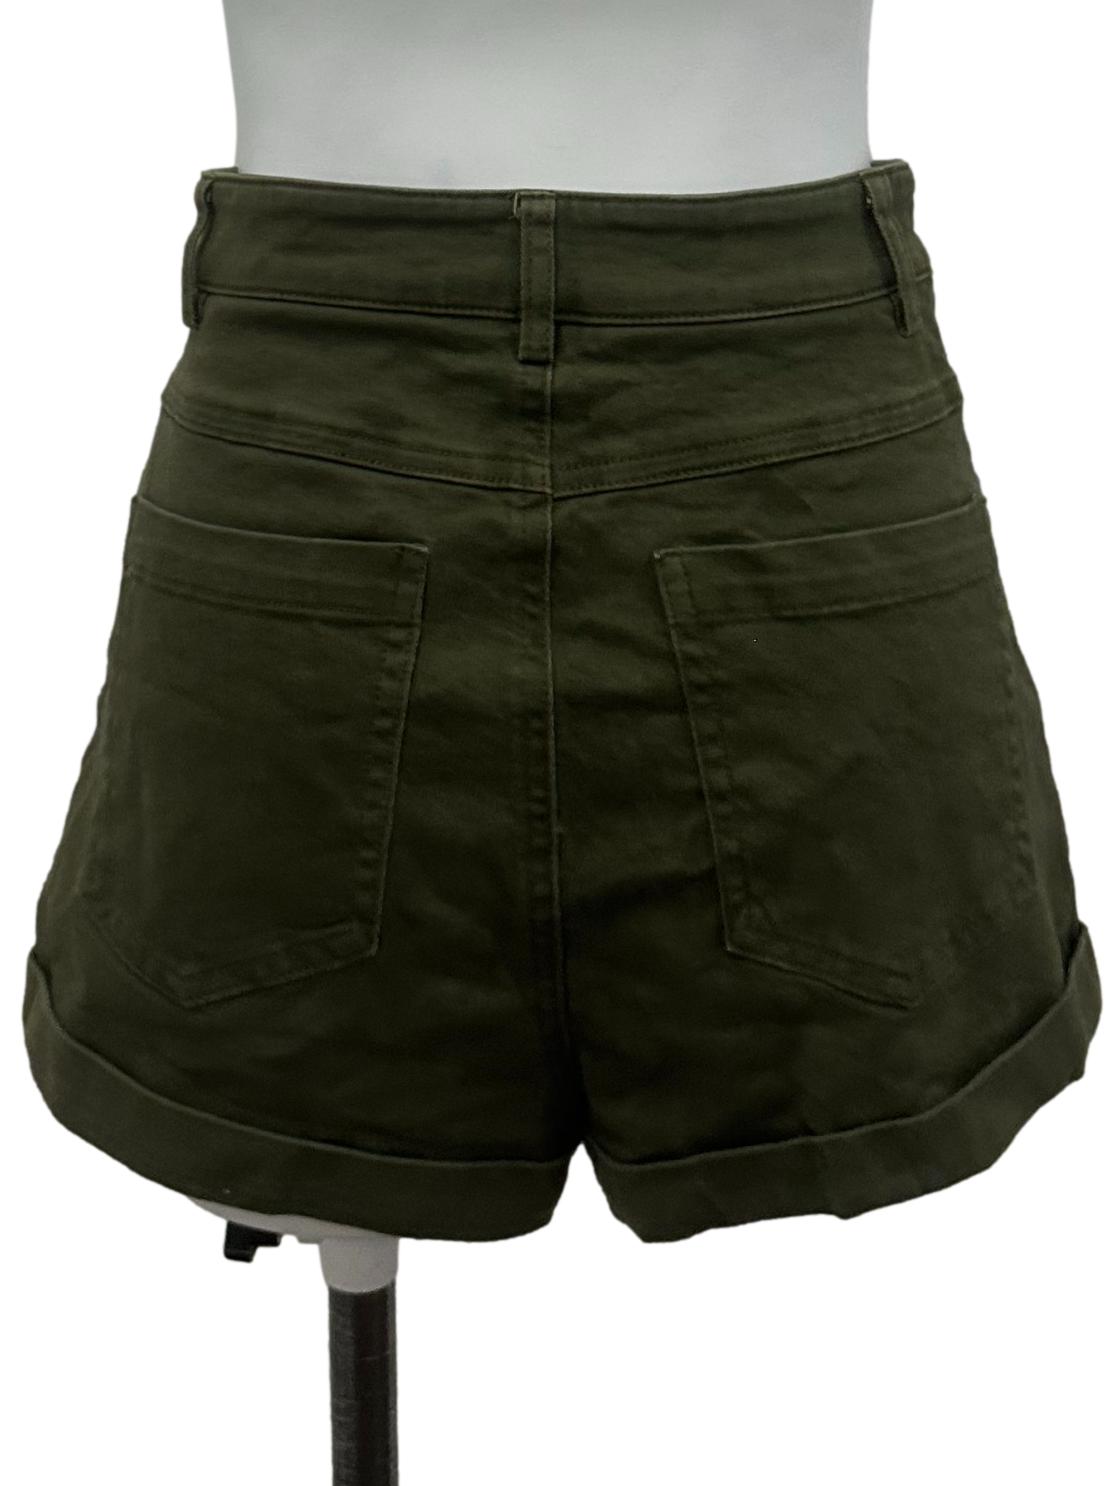 Army Green Denim Shorts